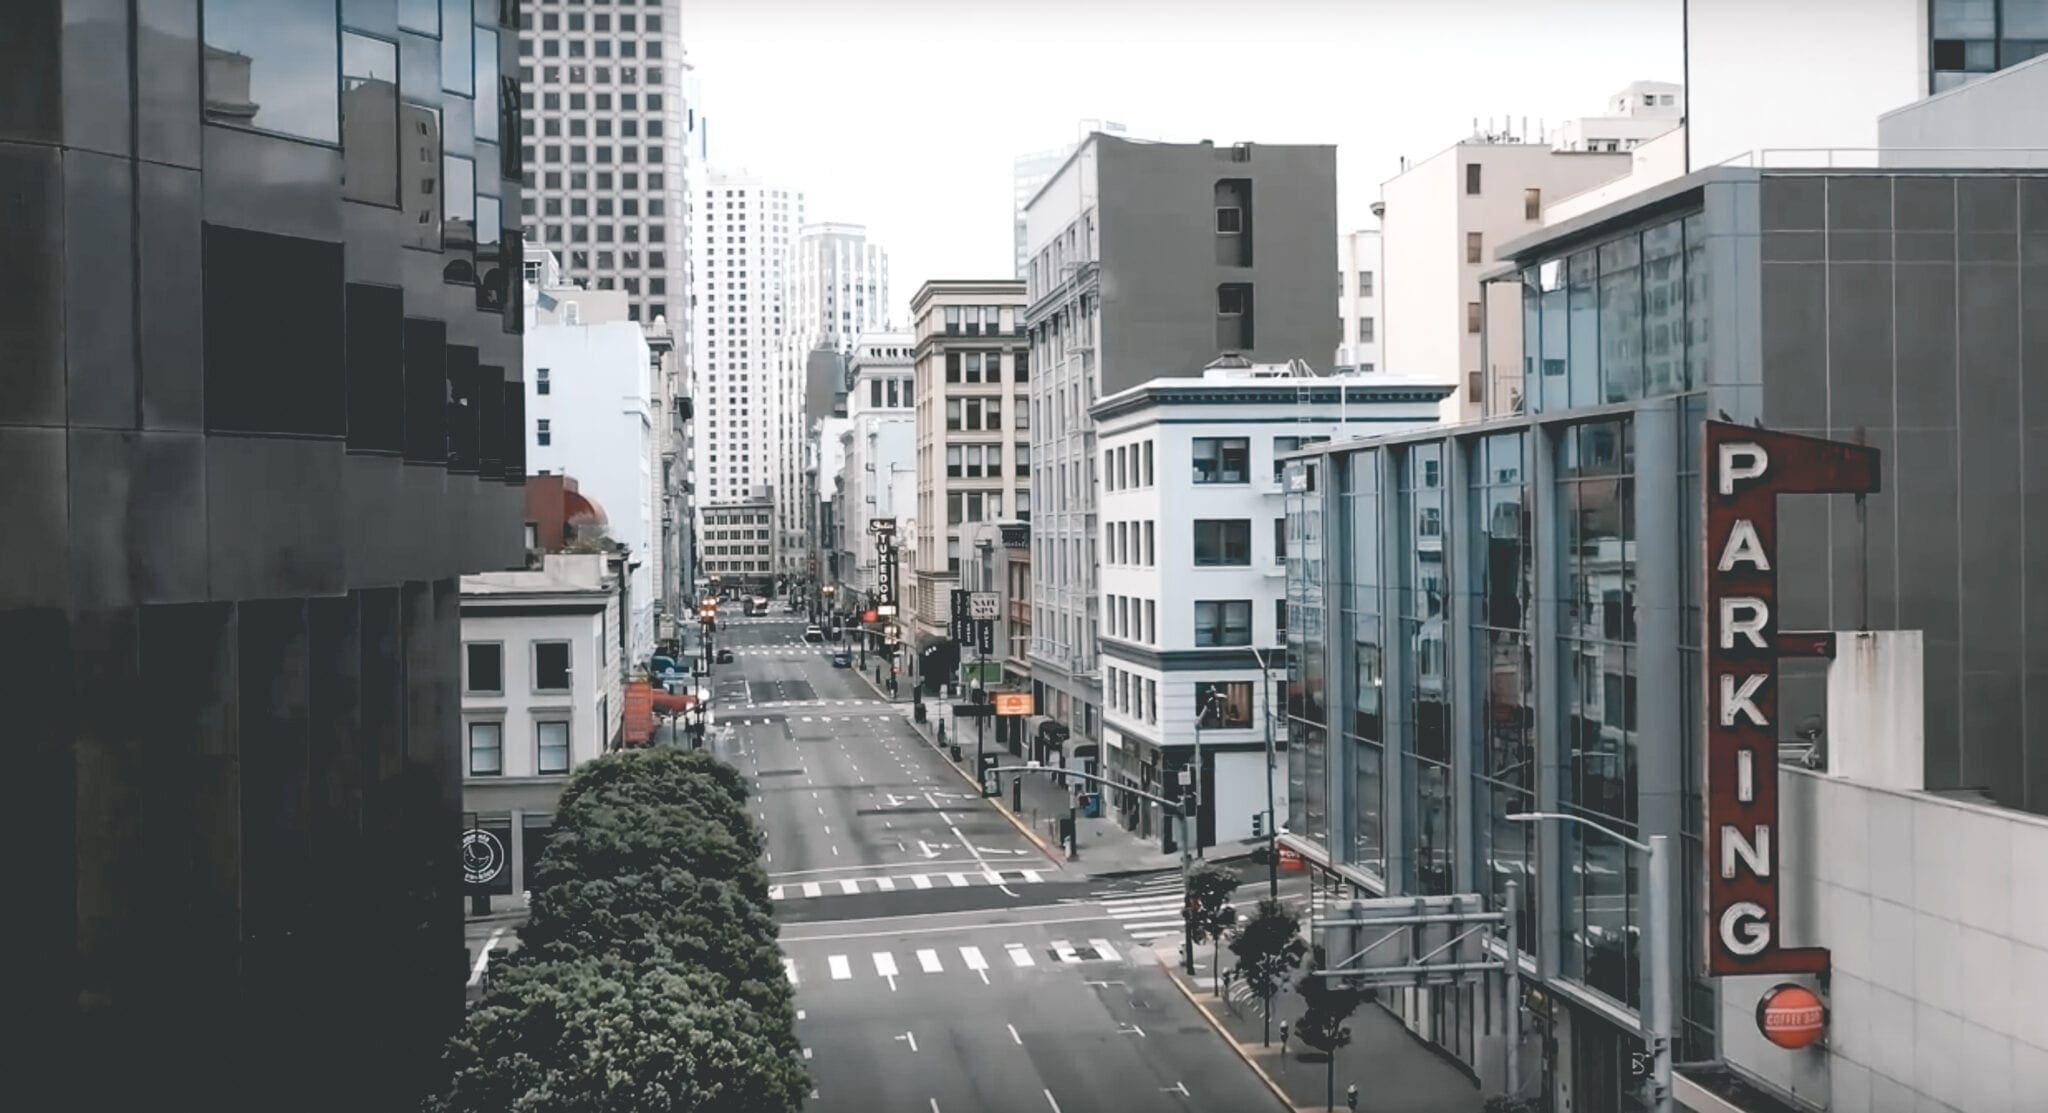 San francisco leeg, Short video bewijst: zo leeg is San Francisco op dit moment